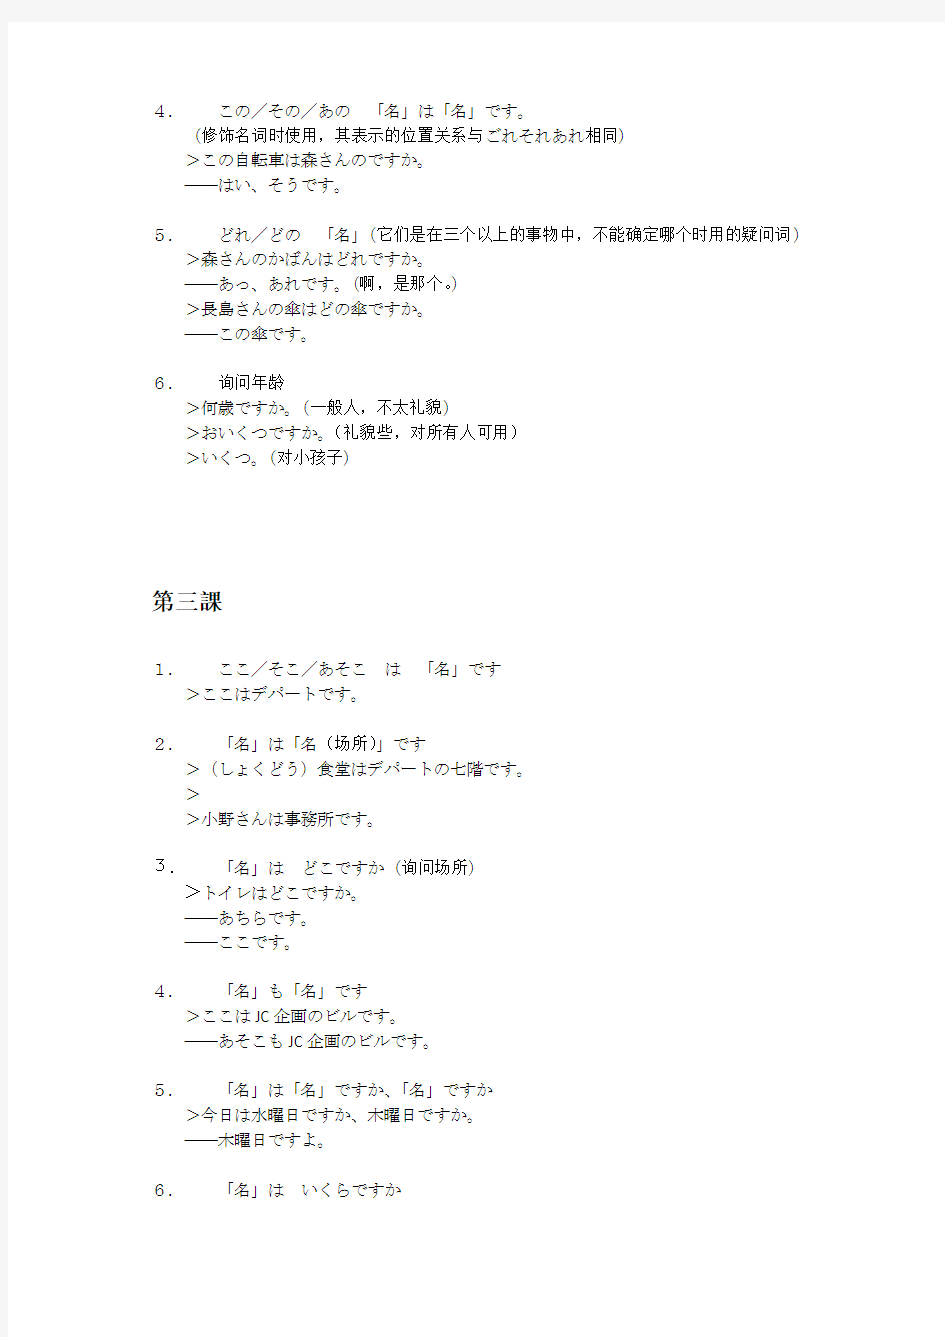 《新版中日交流标准日本语》学习笔记(上册)